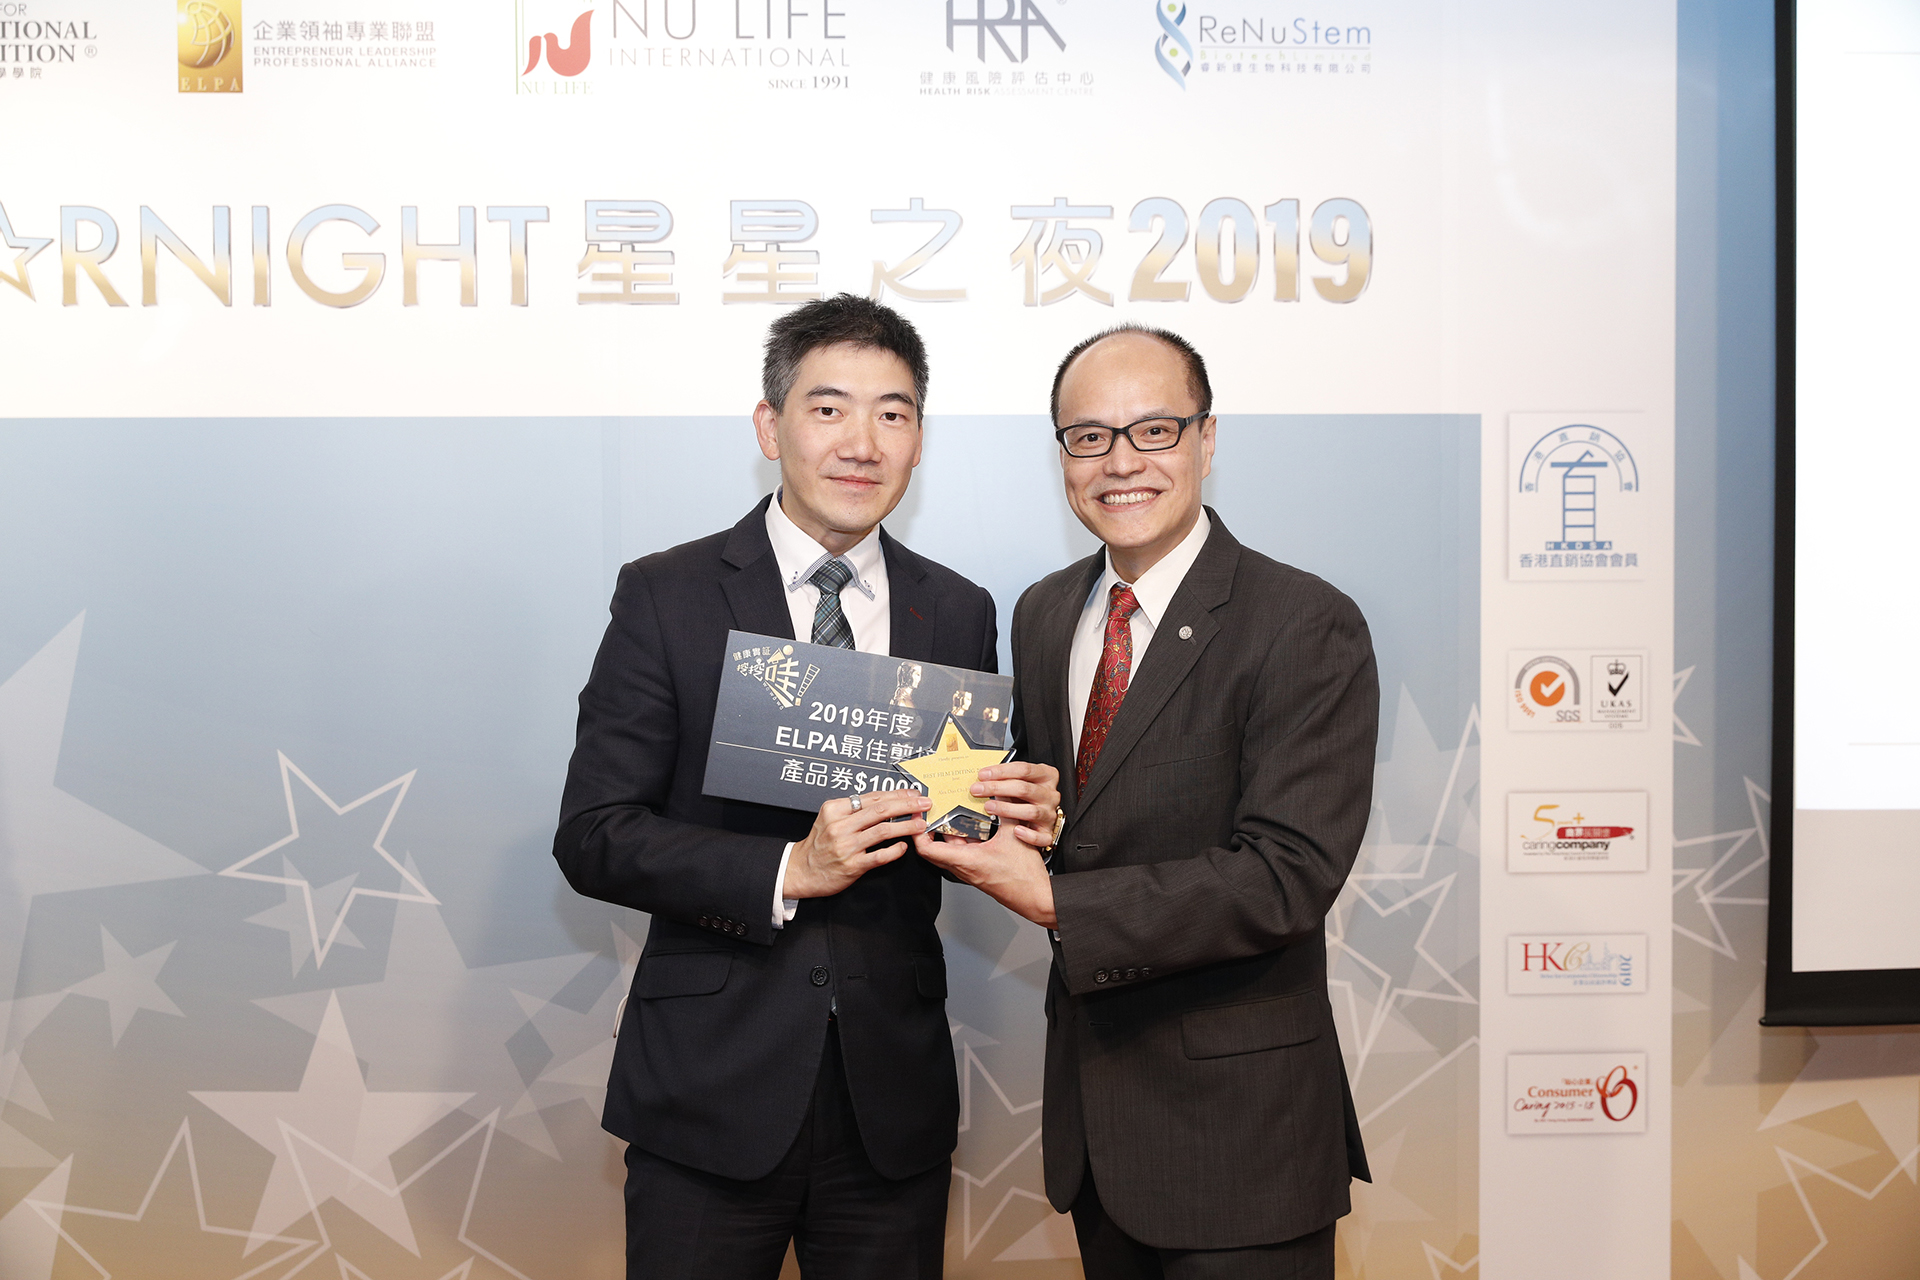 劉福華先生公布2019度健康實証WAWAWA投票結果，恭喜一班獲獎的媒體製作部成員